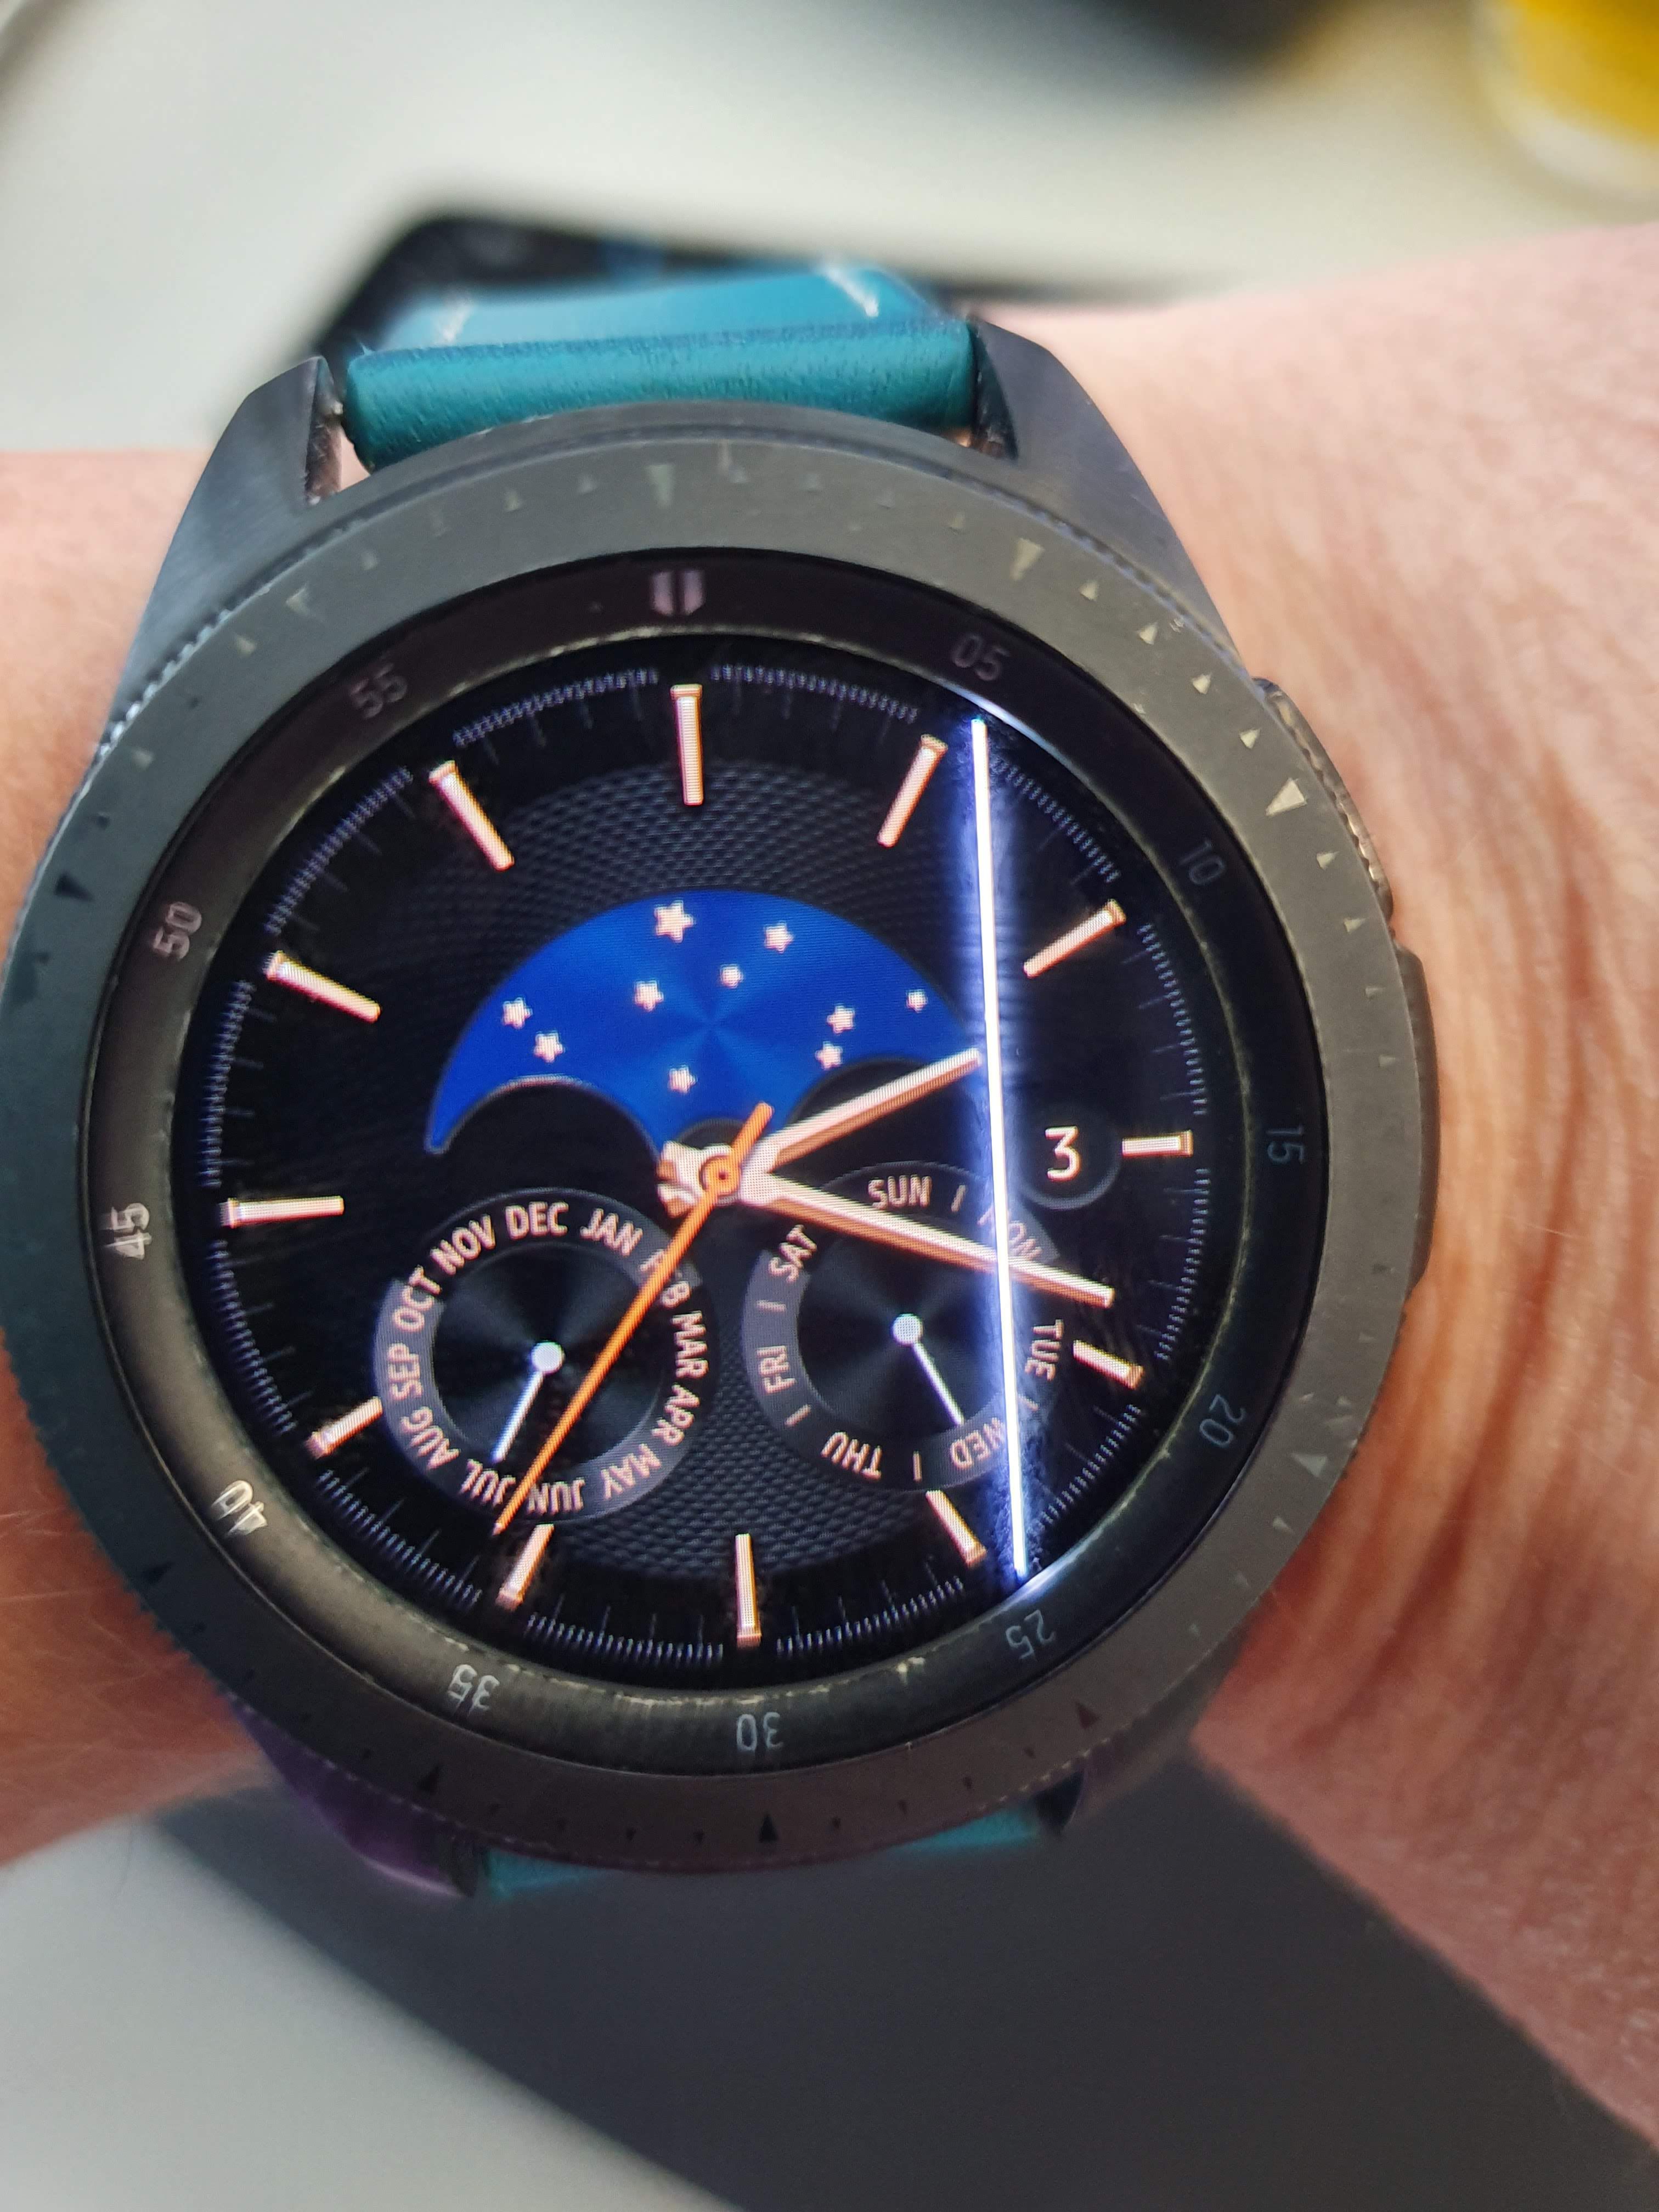 Gelost Galaxy Watch Diverse Defekte Samsung Community